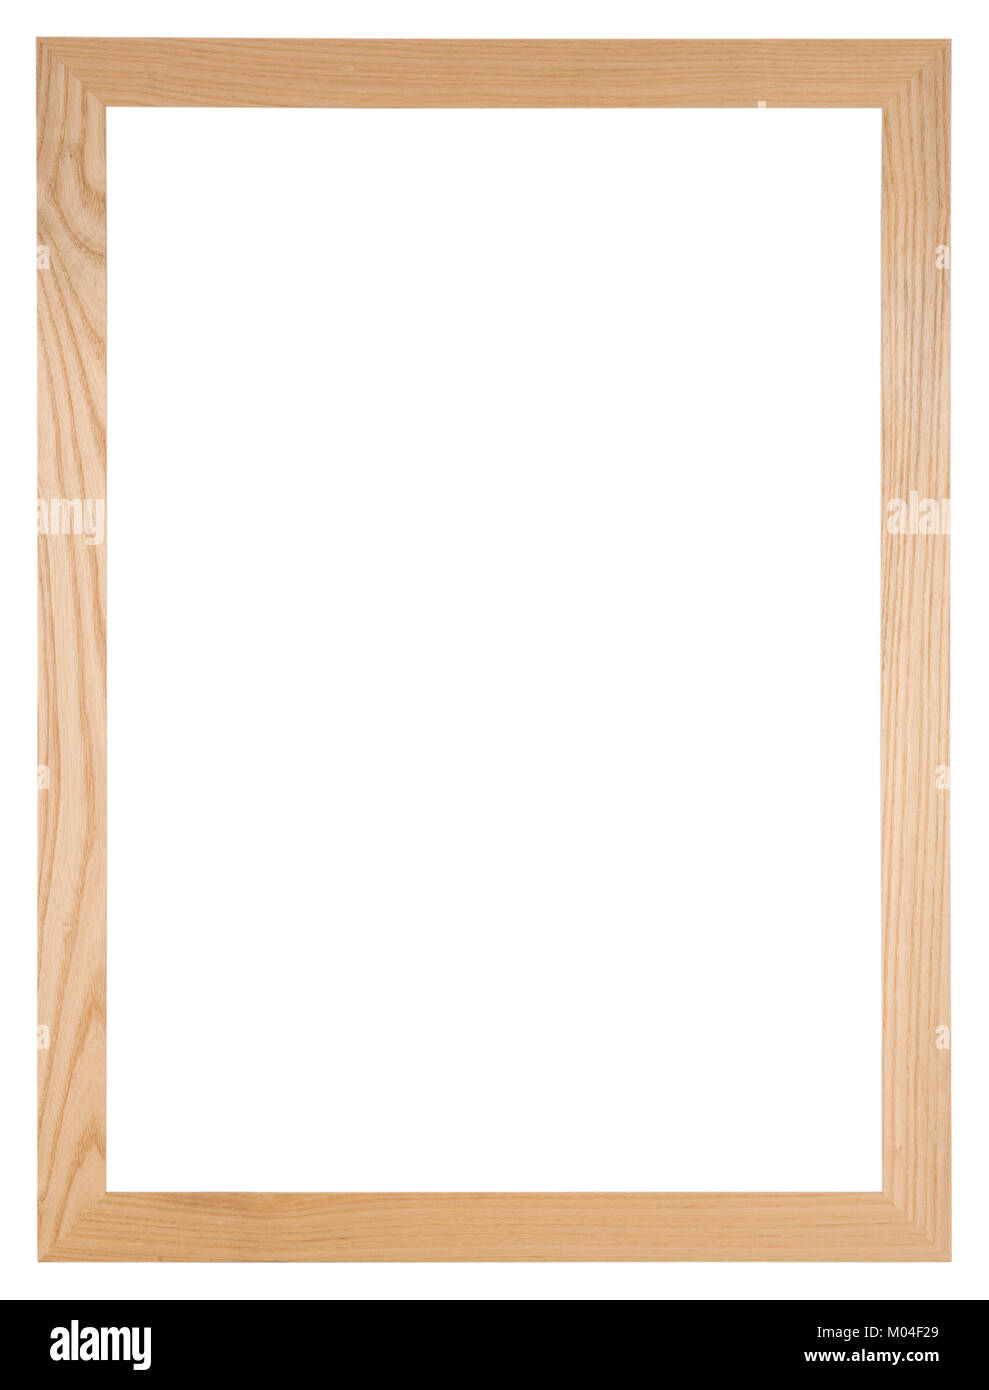 Marco de imagen vacío aislado en blanco, en formato vertical de roble claro Foto de stock